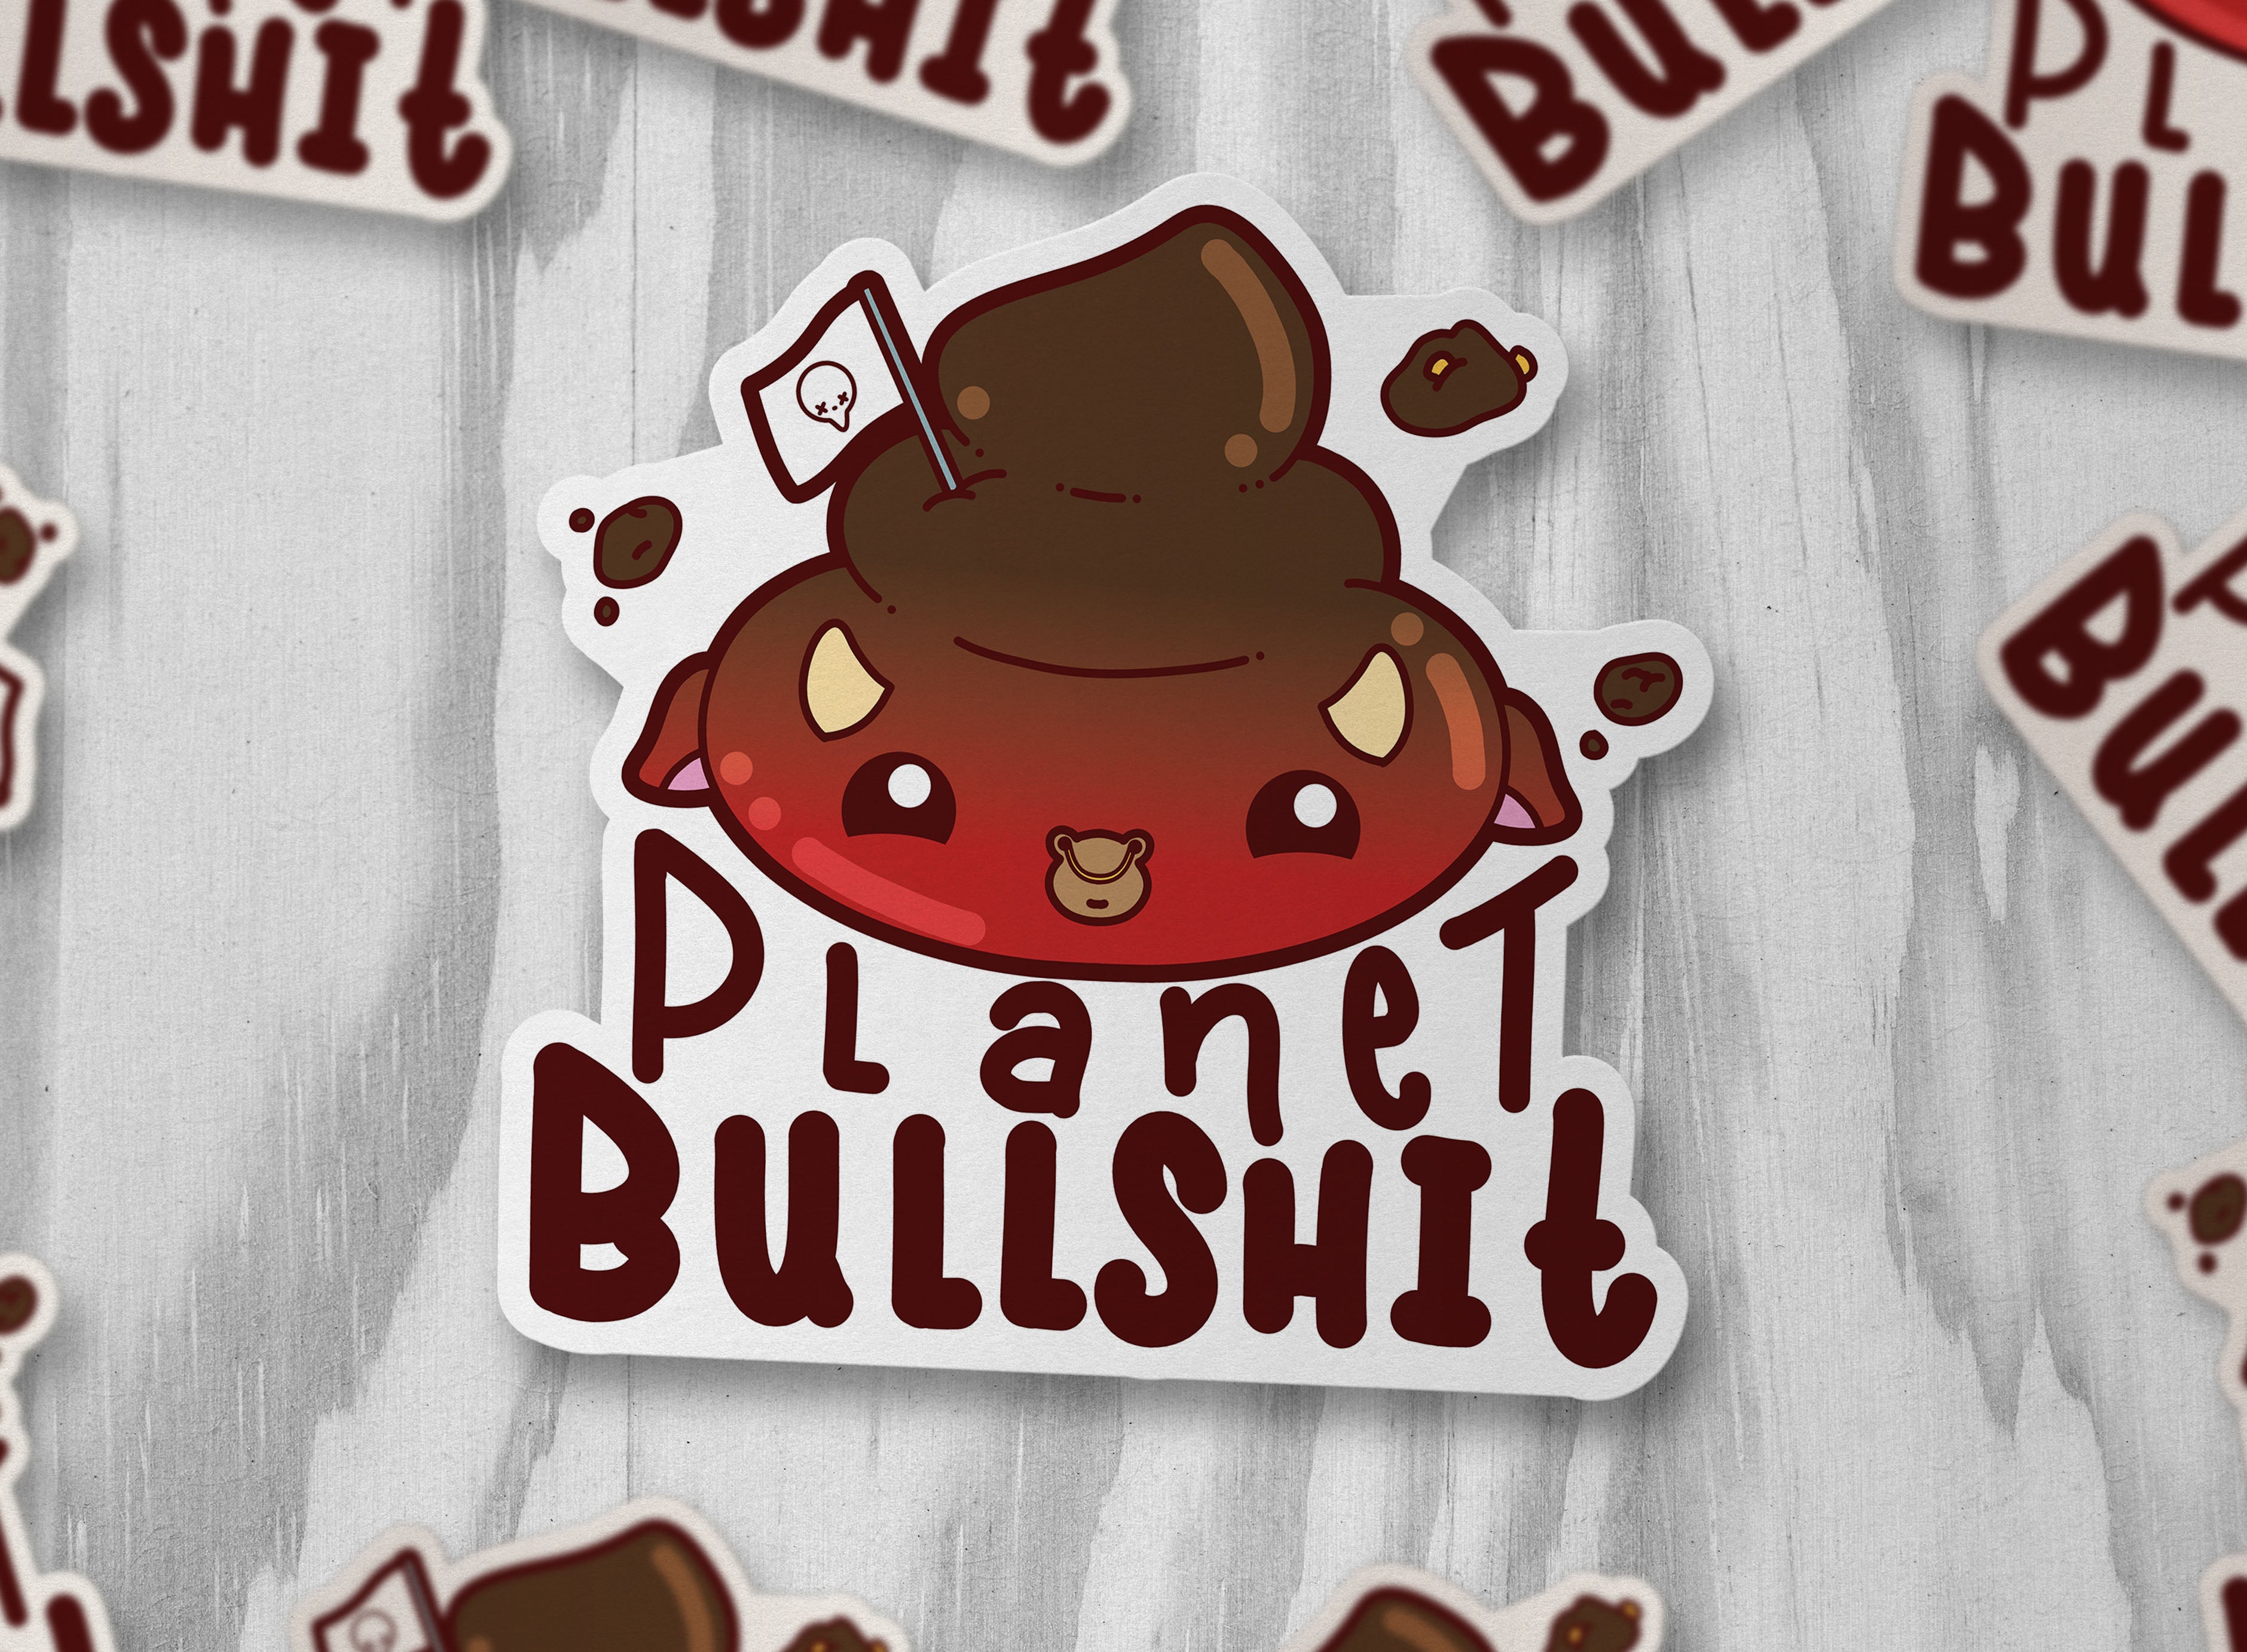 Planet Bullshit - ChubbleGumLLC